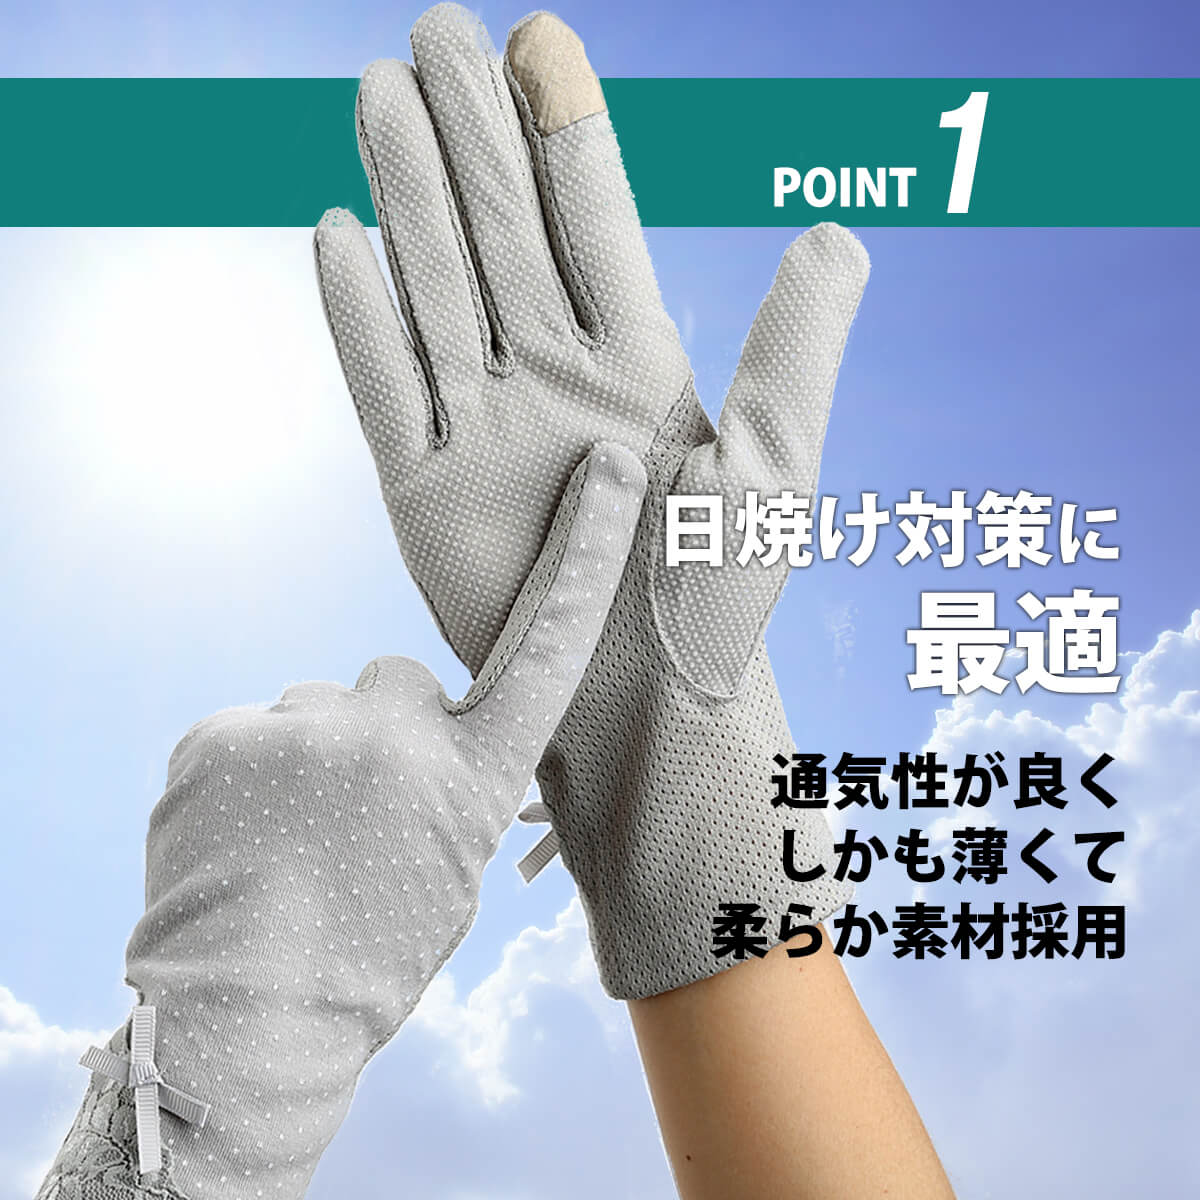 安心の実績 高価 買取 強化中 ラスト1点 通気性 アームガード 手袋 紫外線防止 日焼け防止